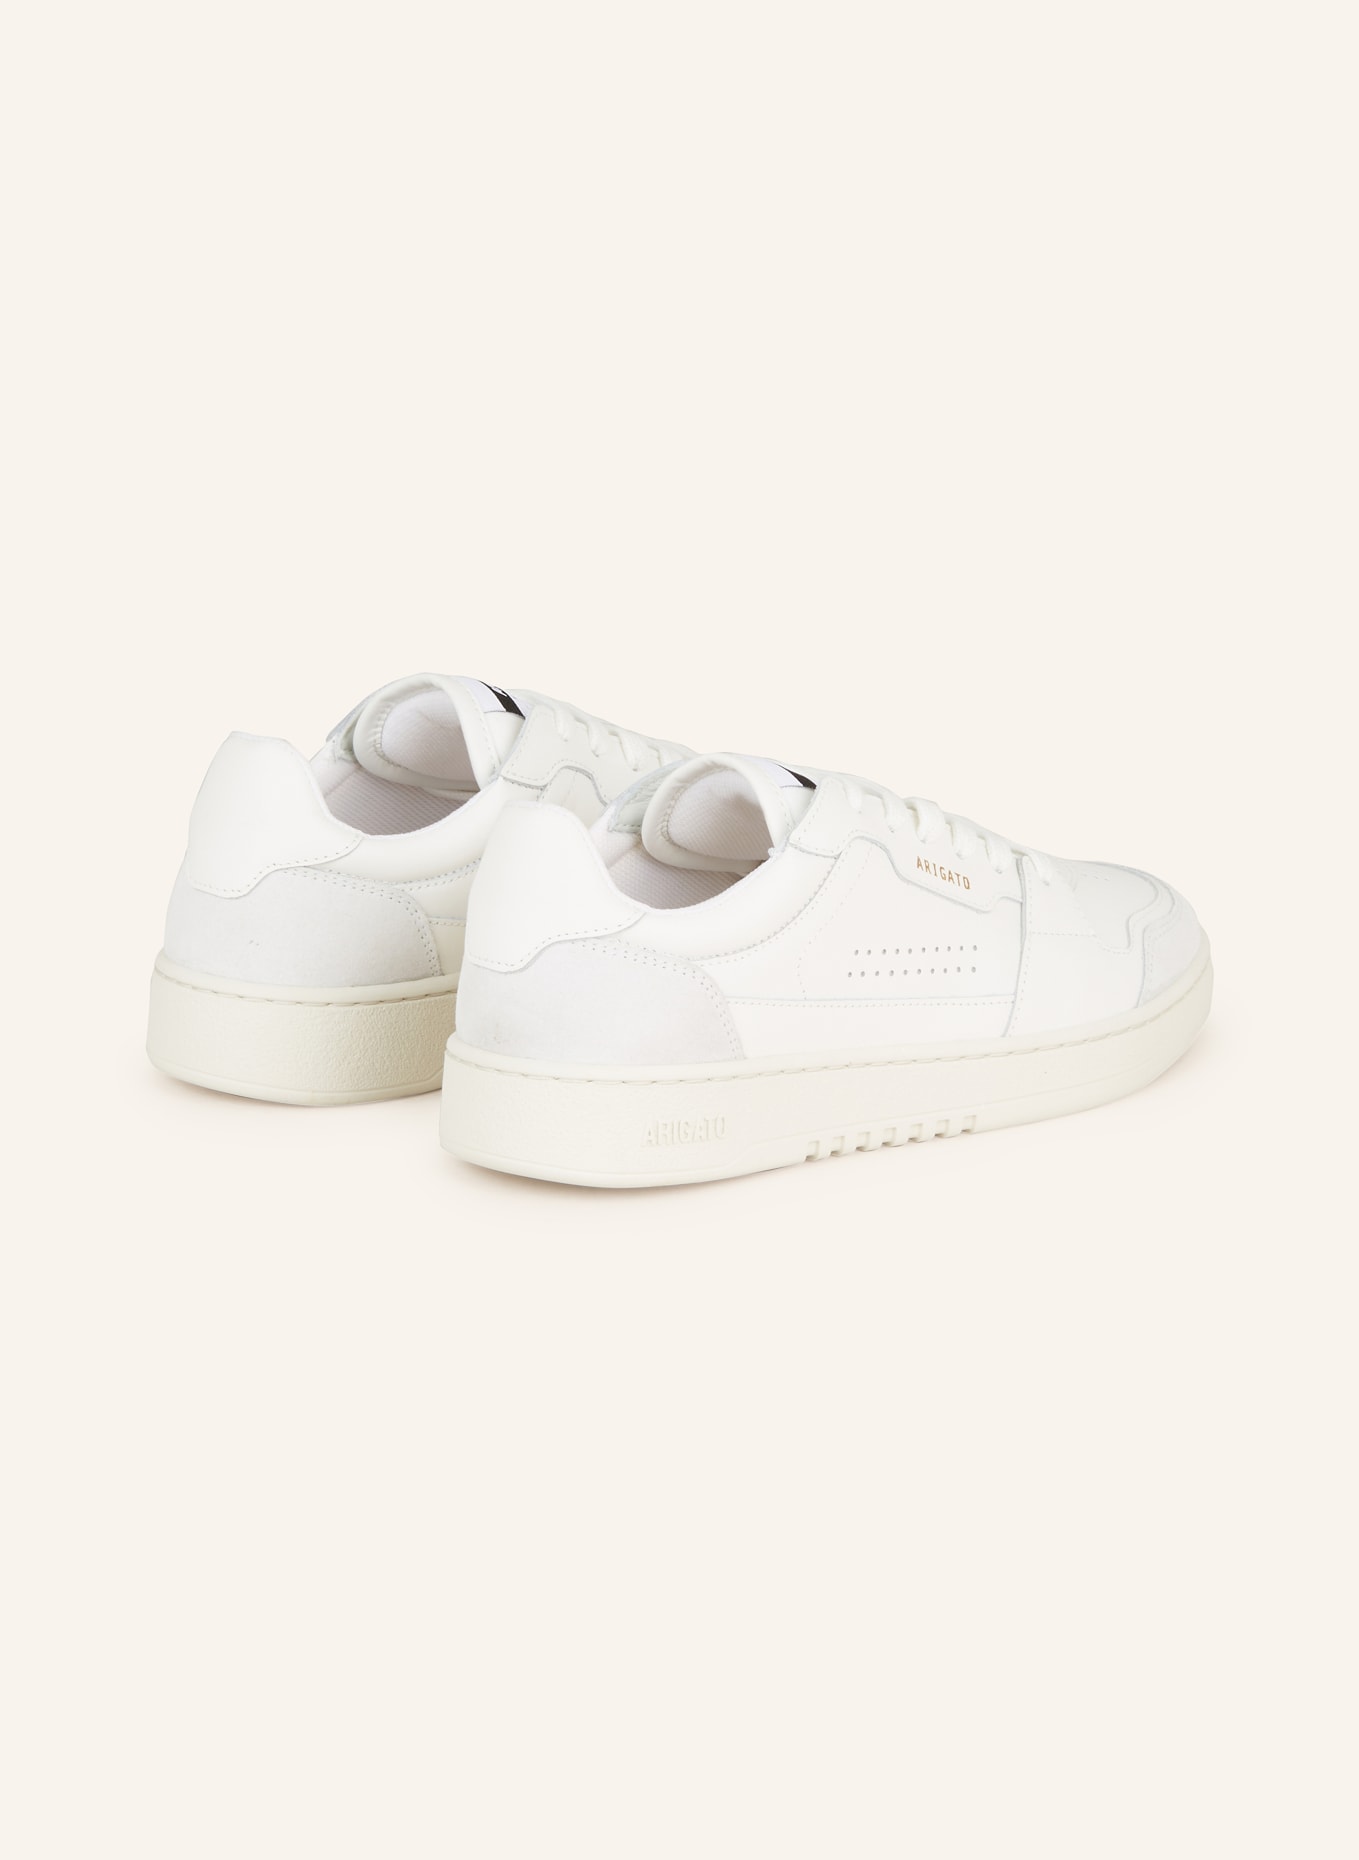 AXEL ARIGATO Sneakers DICE LO, Color: WHITE/ LIGHT GRAY (Image 2)